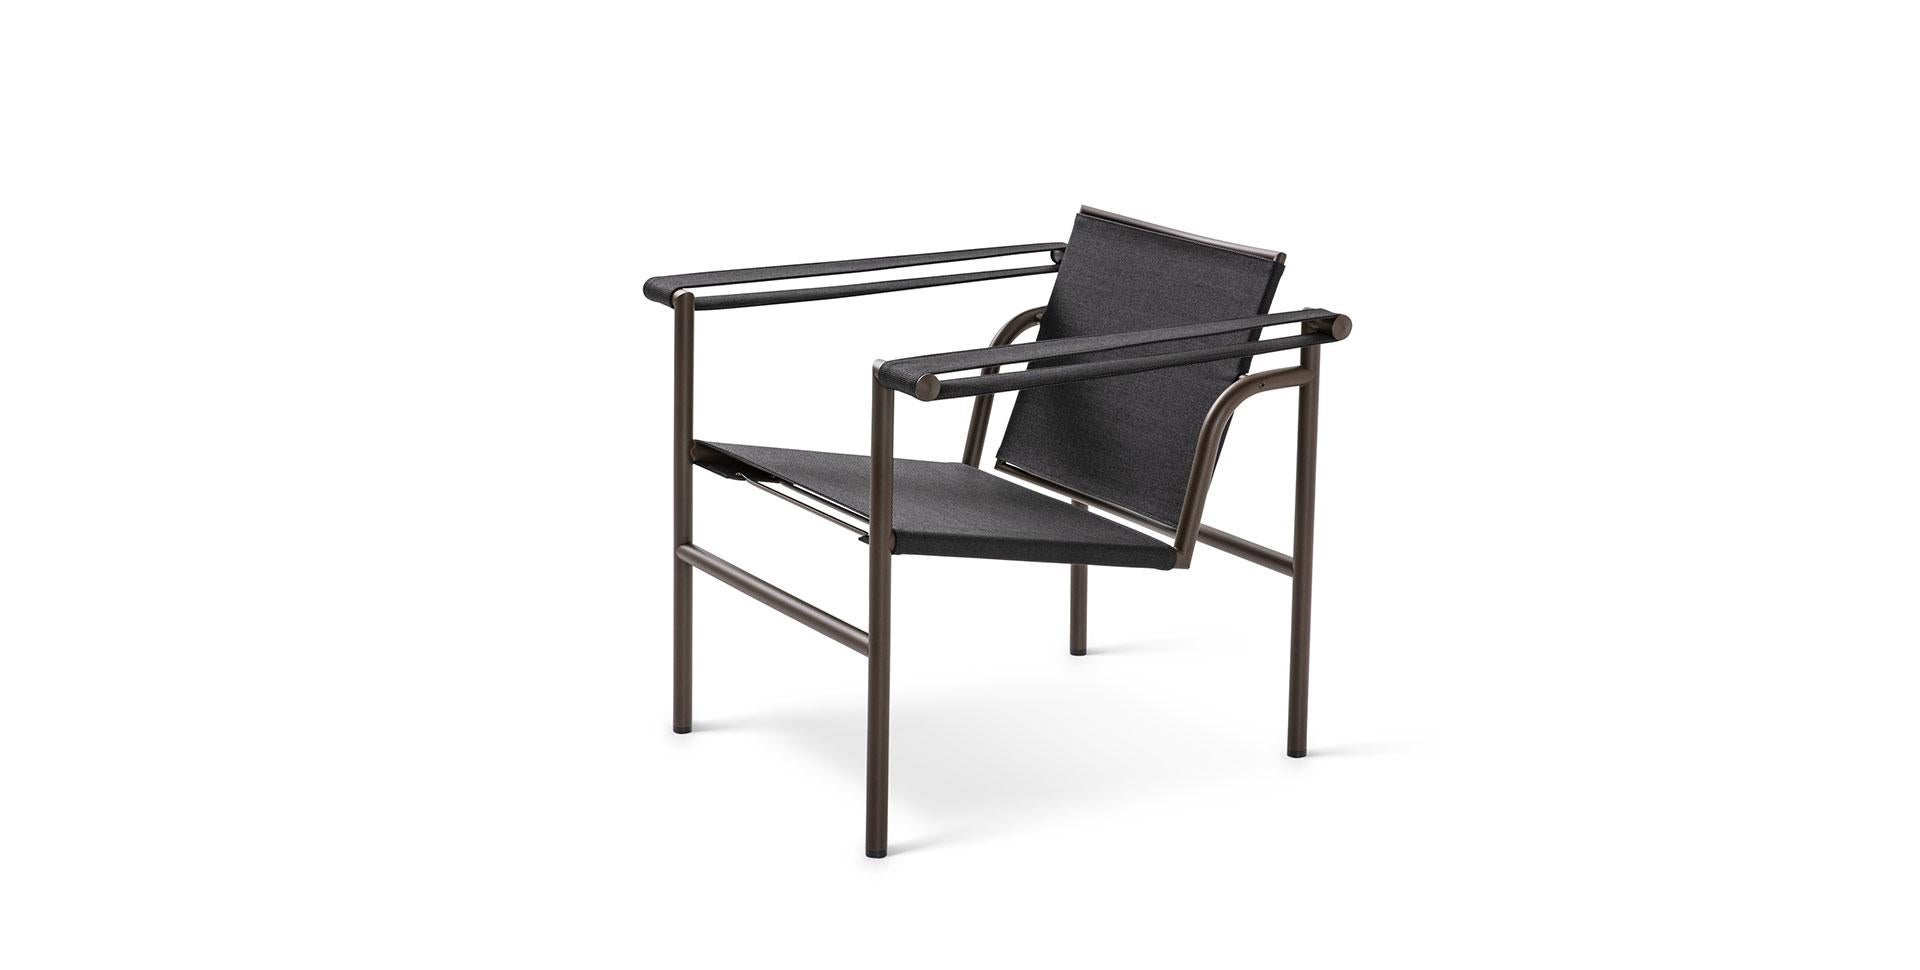 Chaise conçue par Le Corbusier, Pierre Jeanneret, Charlotte Perriand en 1928. Relancé en 2019.
Fabriqué par Cassina en Italie.

Une chaise légère et compacte conçue et présentée au Salon d'Automne de 1929 avec d'autres modèles importants, tels